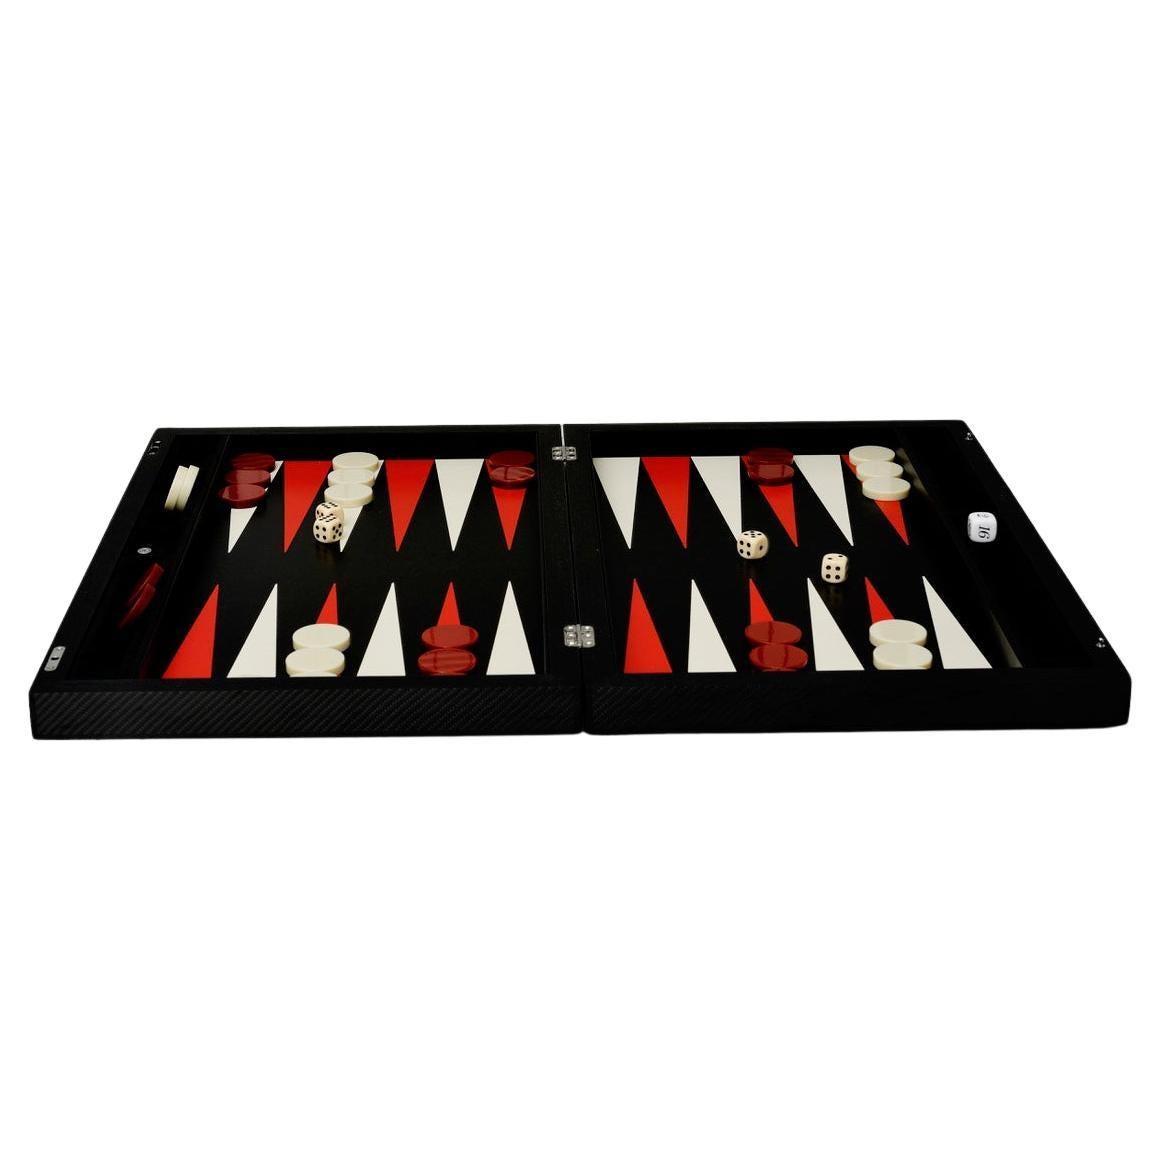  Backgammon Carbon Elie Bleu Paris 